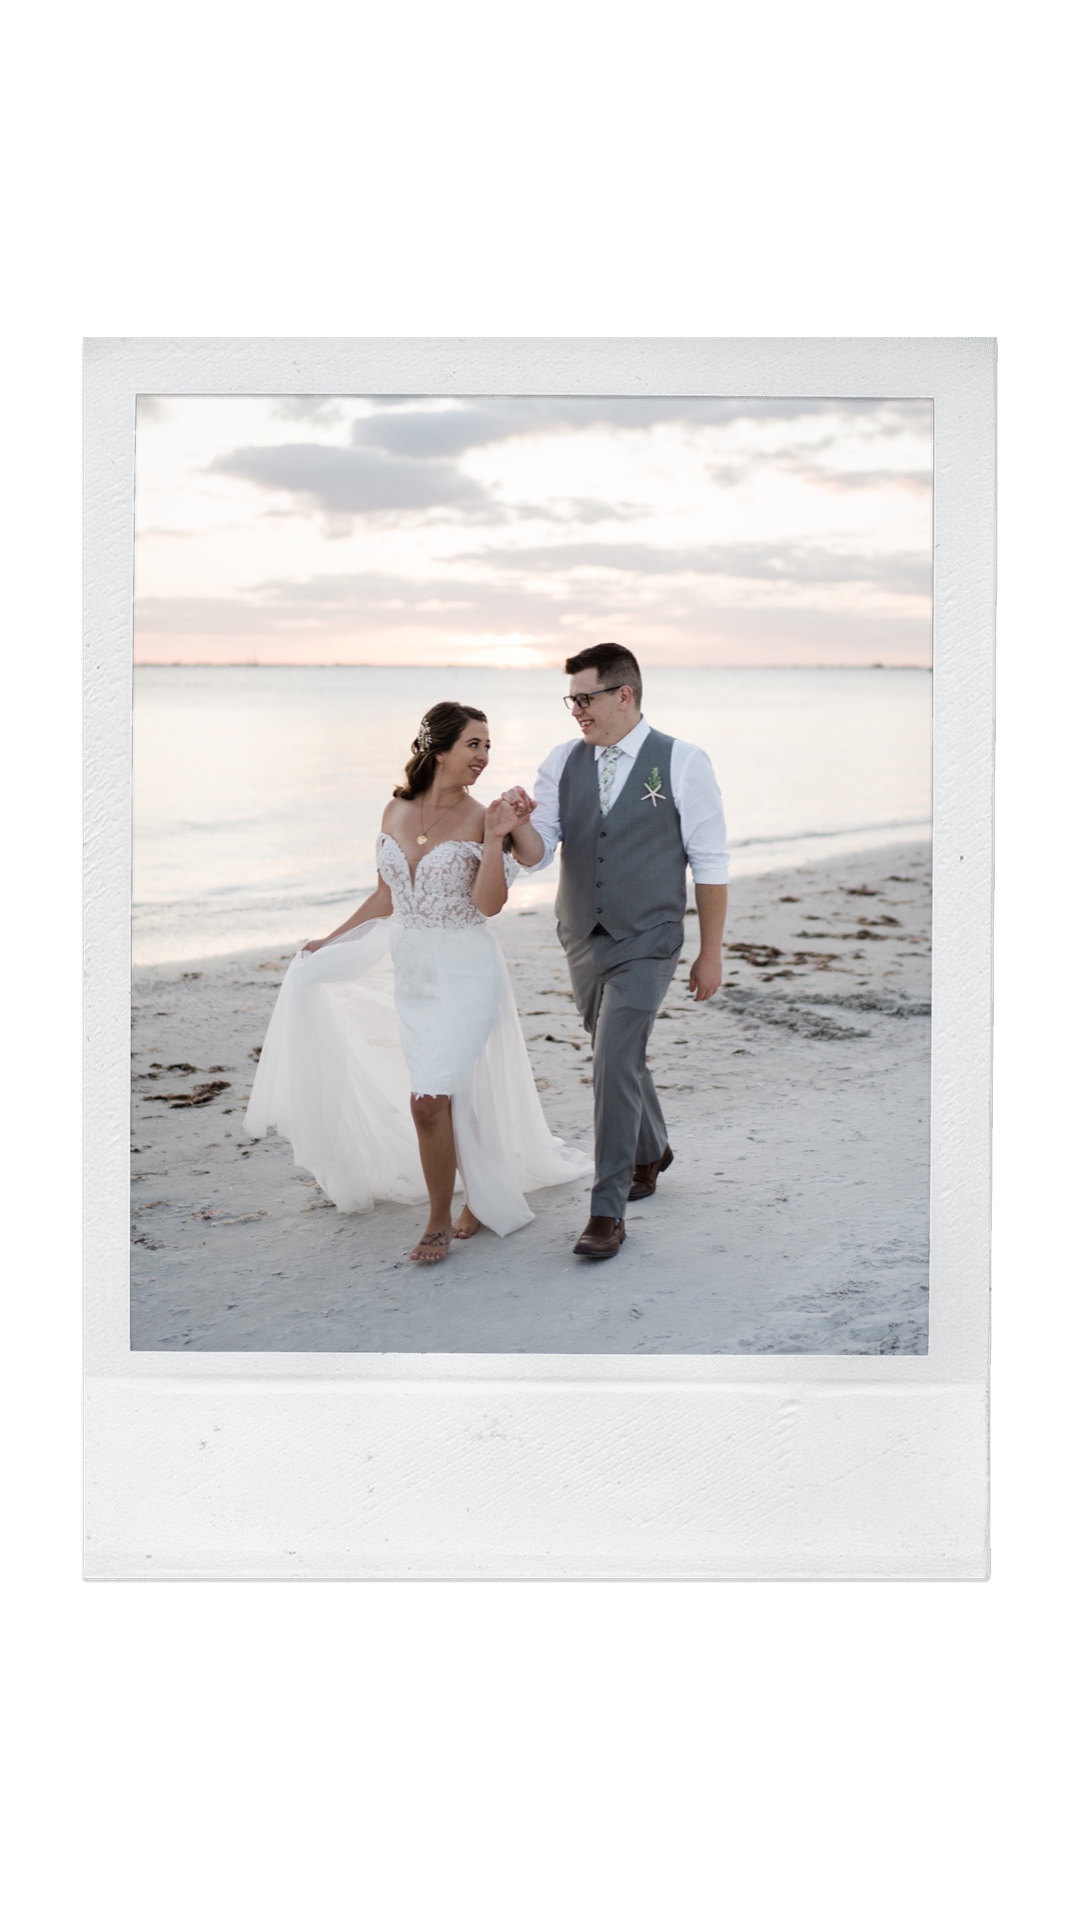 Florida sunset wedding photos